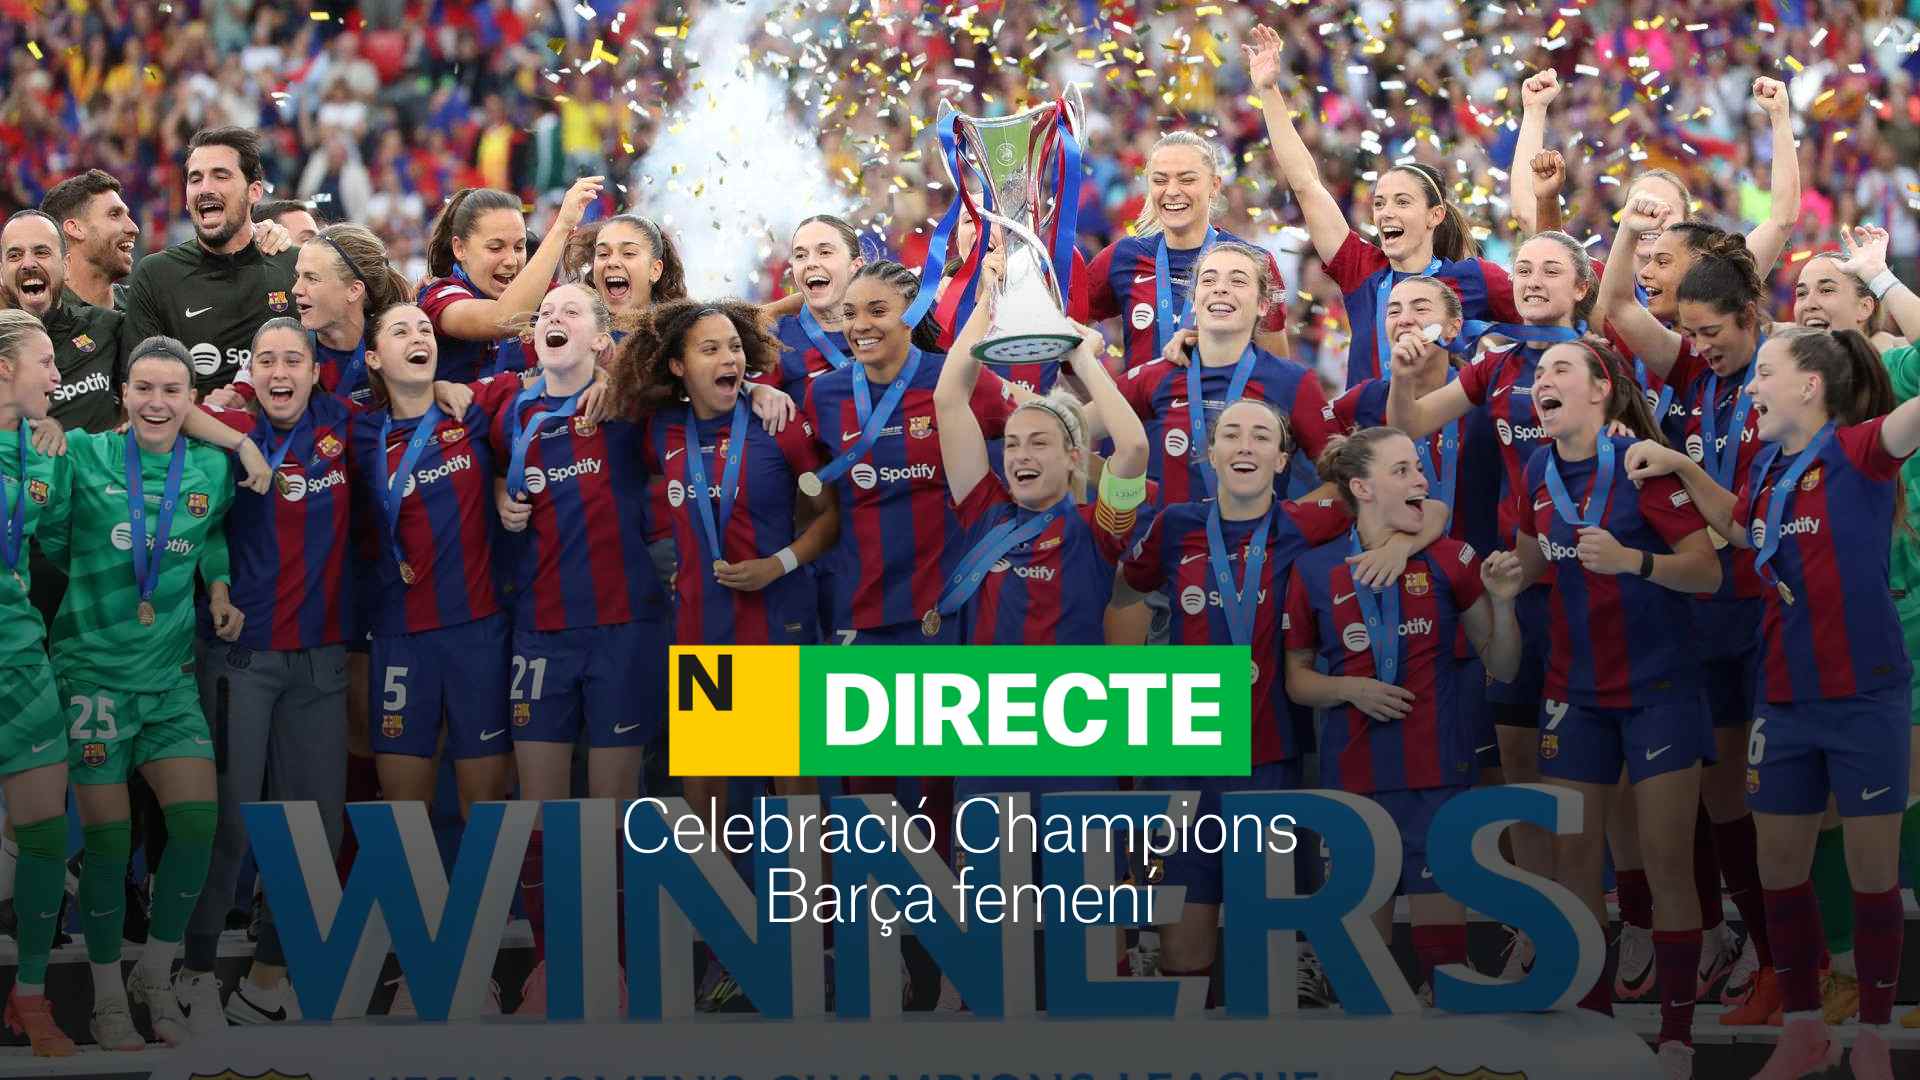 La celebració del Barça femení de la Champions League, DIRECTE | Última hora i reaccions